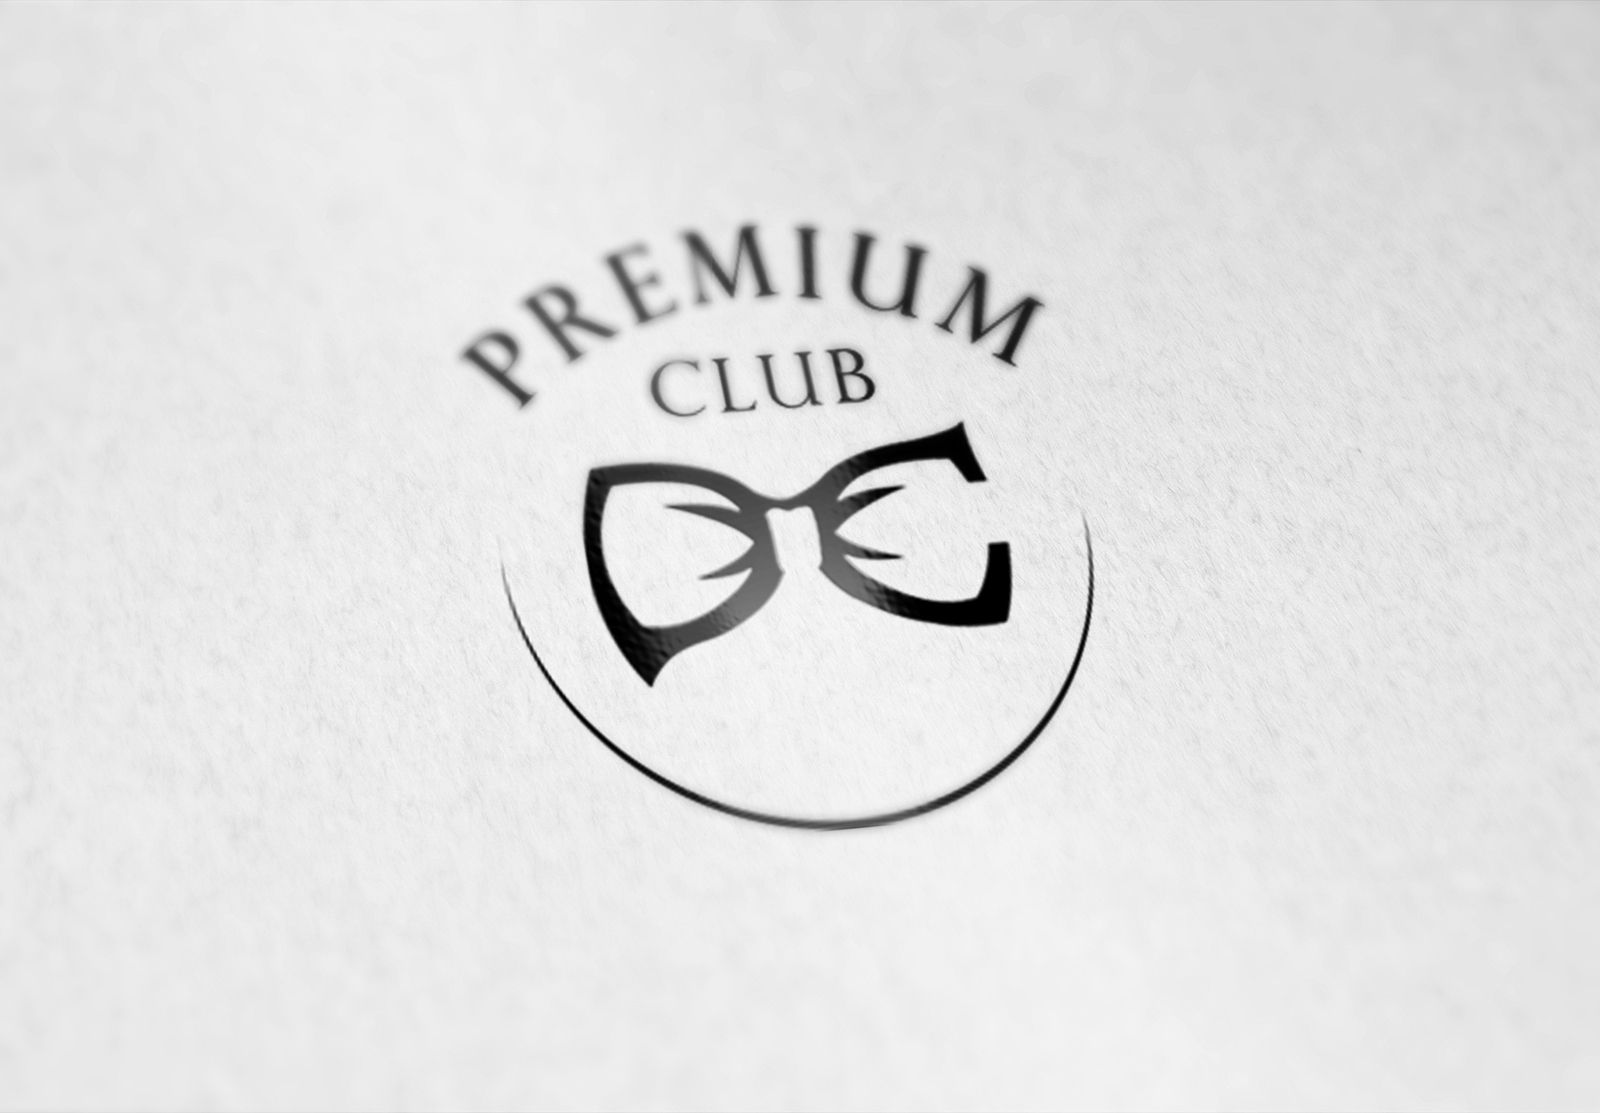 Логотип для Premium Club - дизайнер weste32